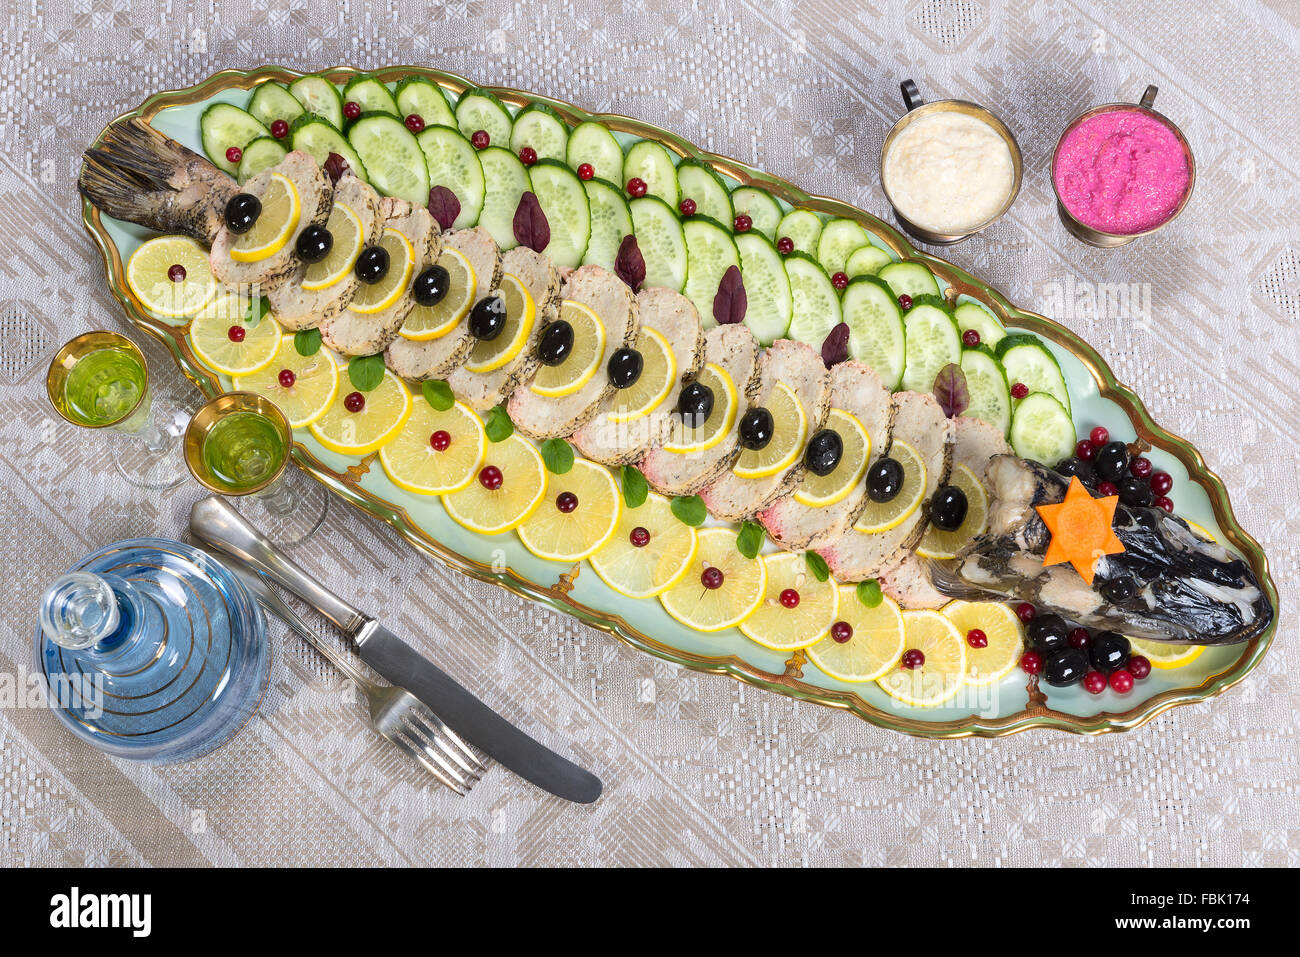 Ein traditionelles Ashkenazi jüdischen Gericht aus entbeintem gehackten Fisch, meist von Hecht, gekocht mit Gemüse und Gewürzen Stockfoto